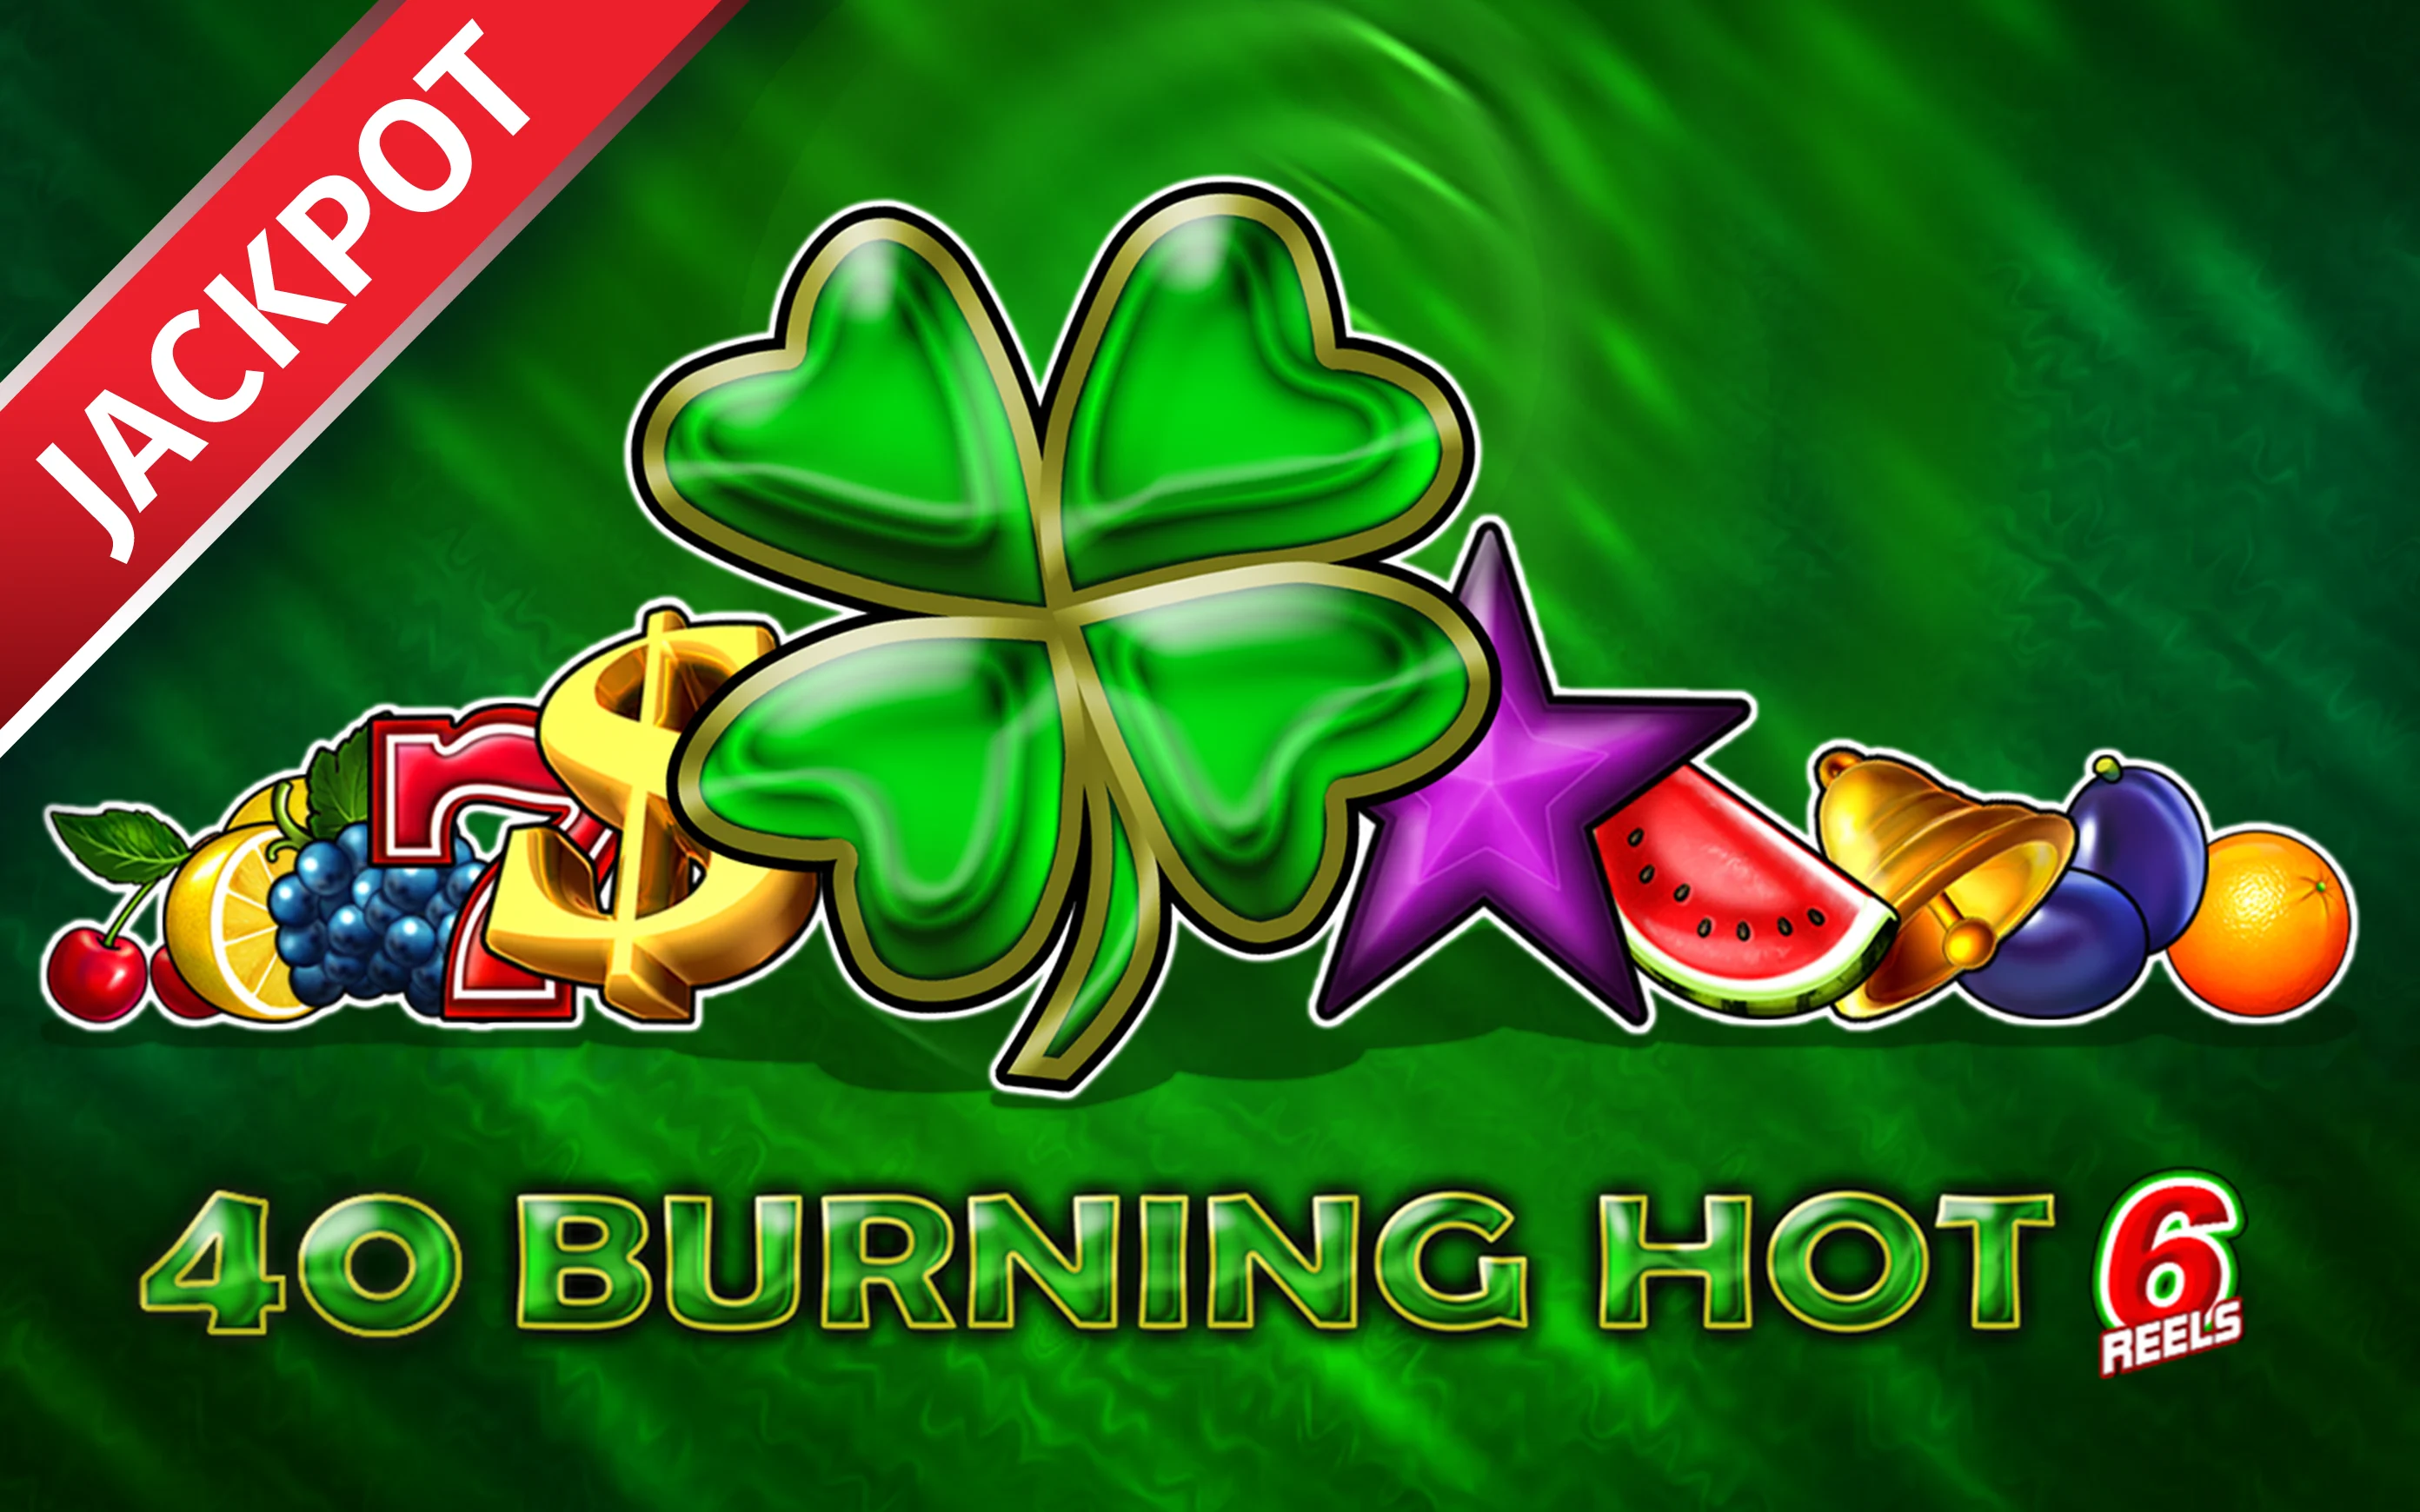 Speel 40 Burning Hot 6 Reels op Starcasino.be online casino